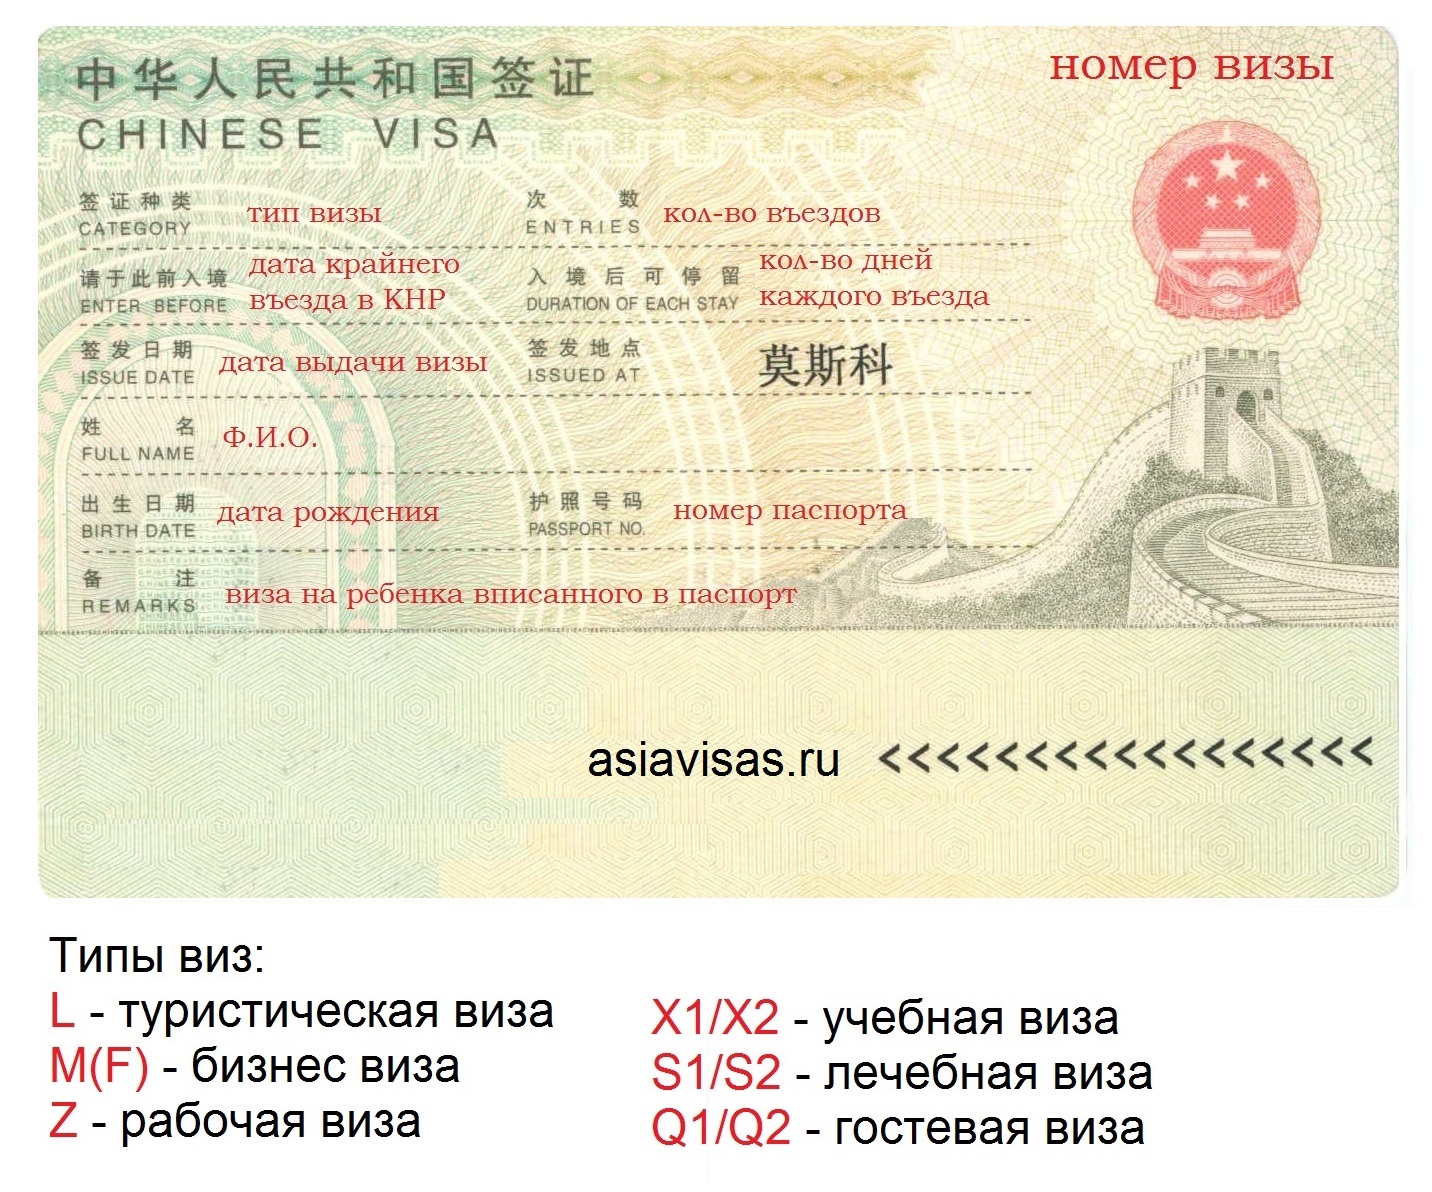 Рабочая виза в китай: правила оформления для россиян
рабочая виза в китай: правила оформления для россиян